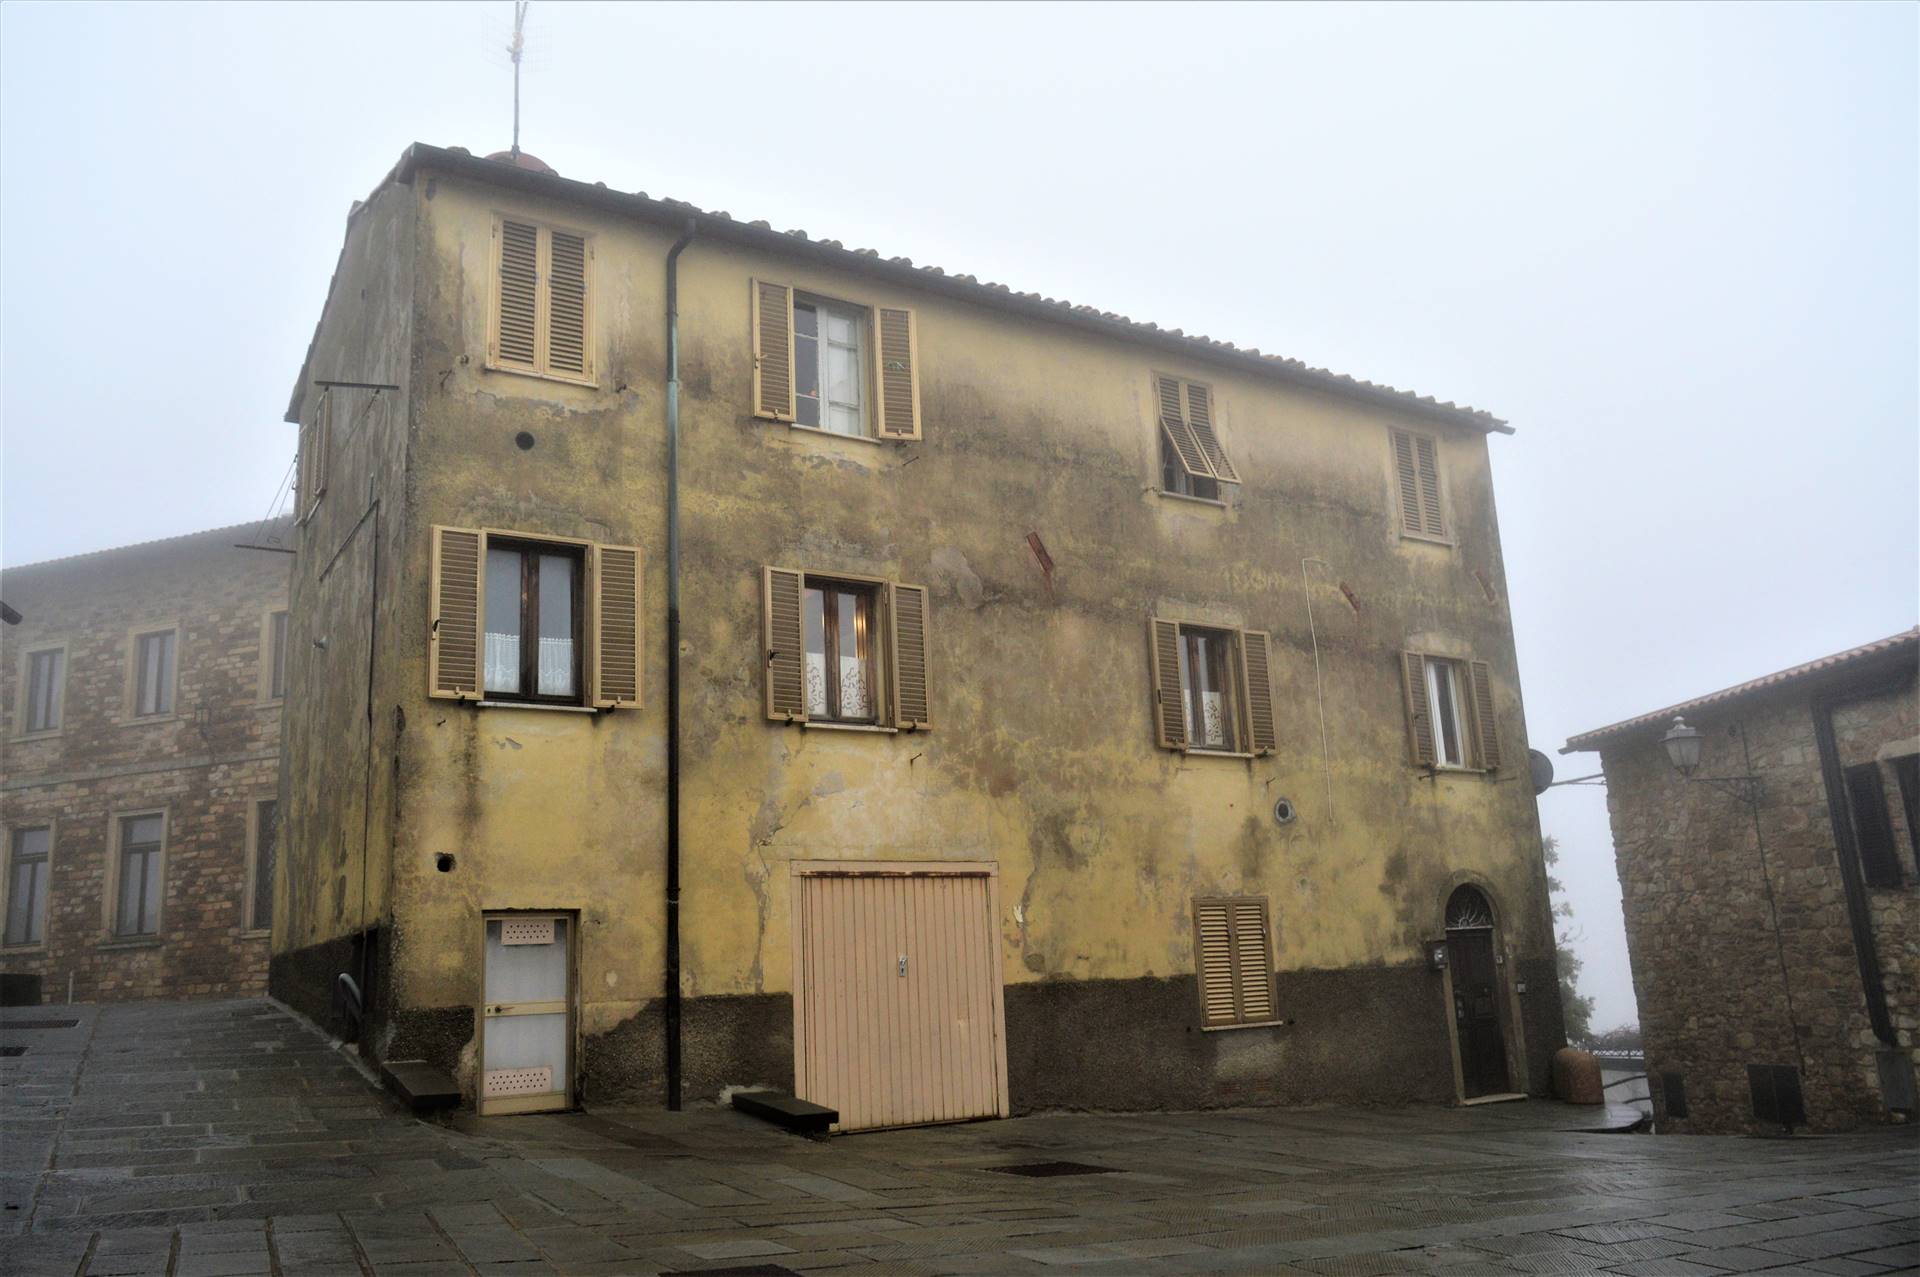 Palazzo in Piazzetta della Torre a Monteverdi Marittimo